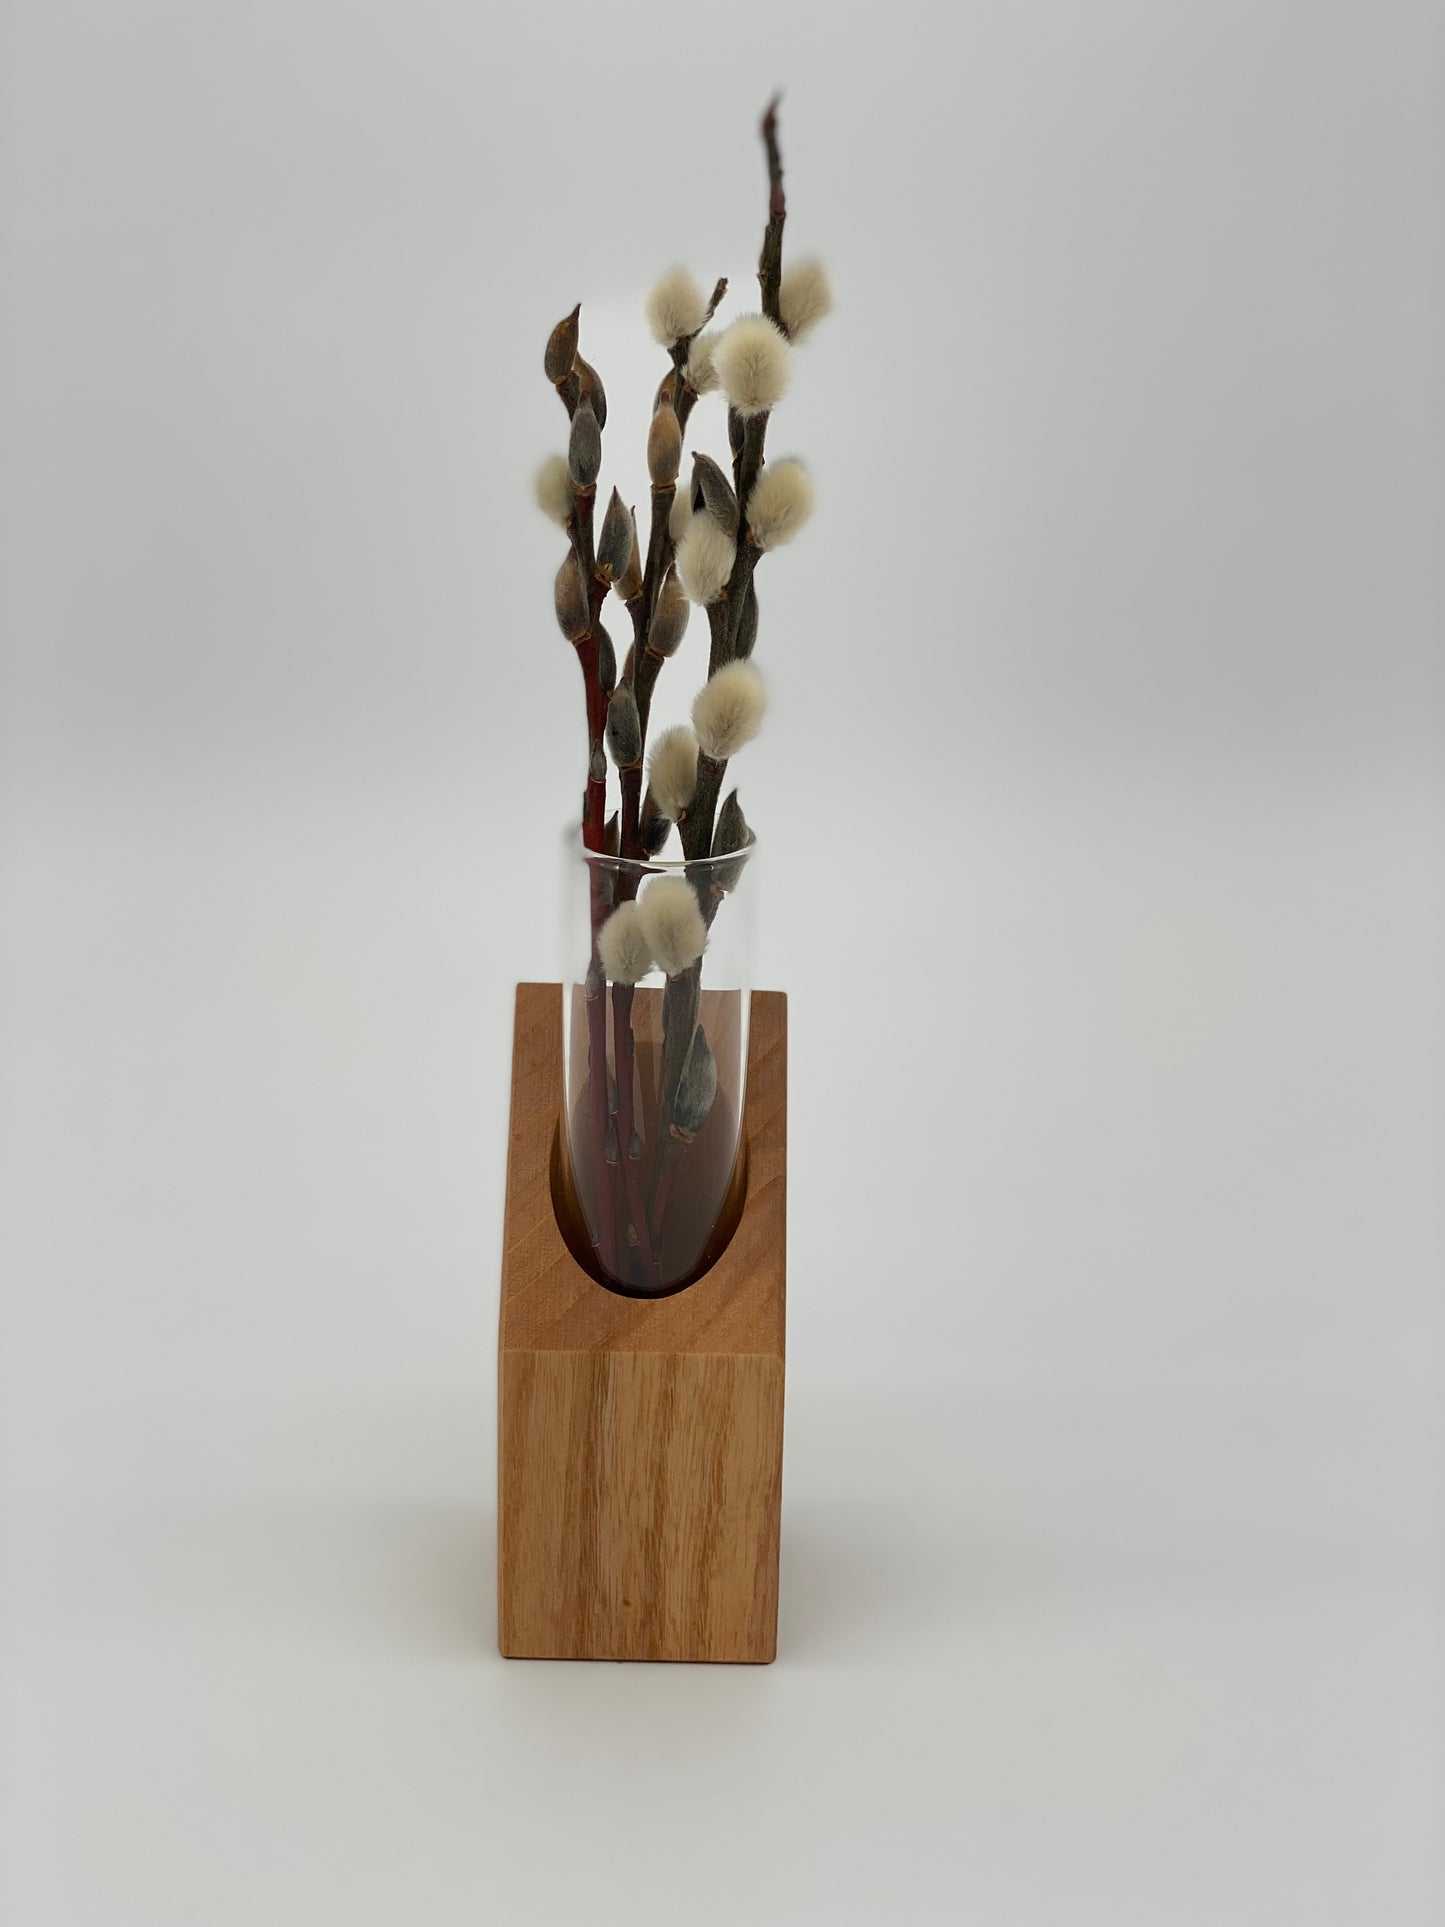 Blumenvase, Anzuchtvase aus heimischen Eschenholz handgefertigt